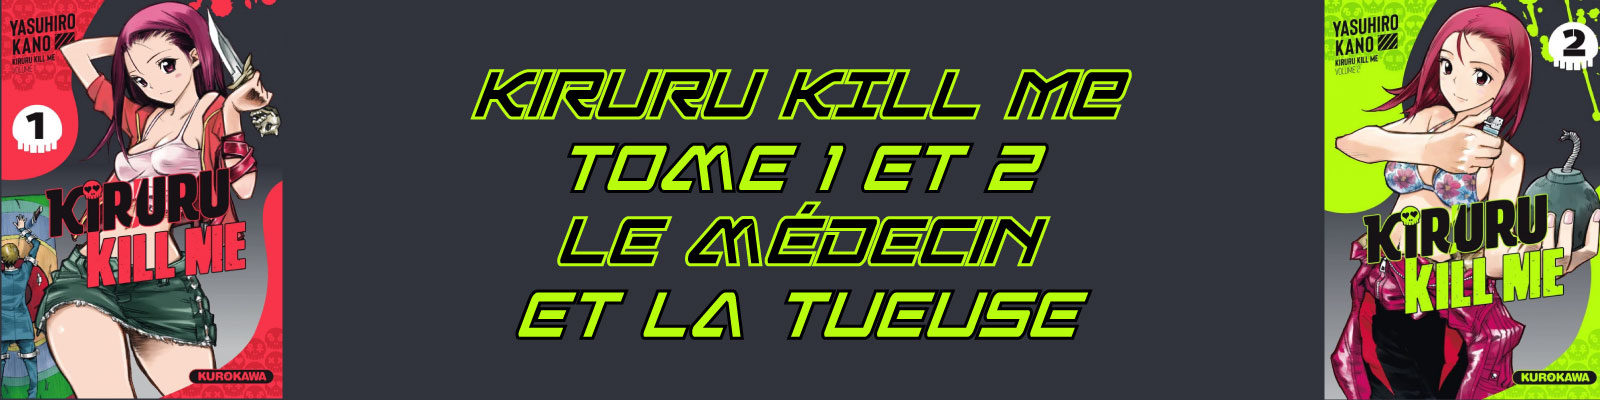 Kiruru KILL ME-Vol.-1-1-2